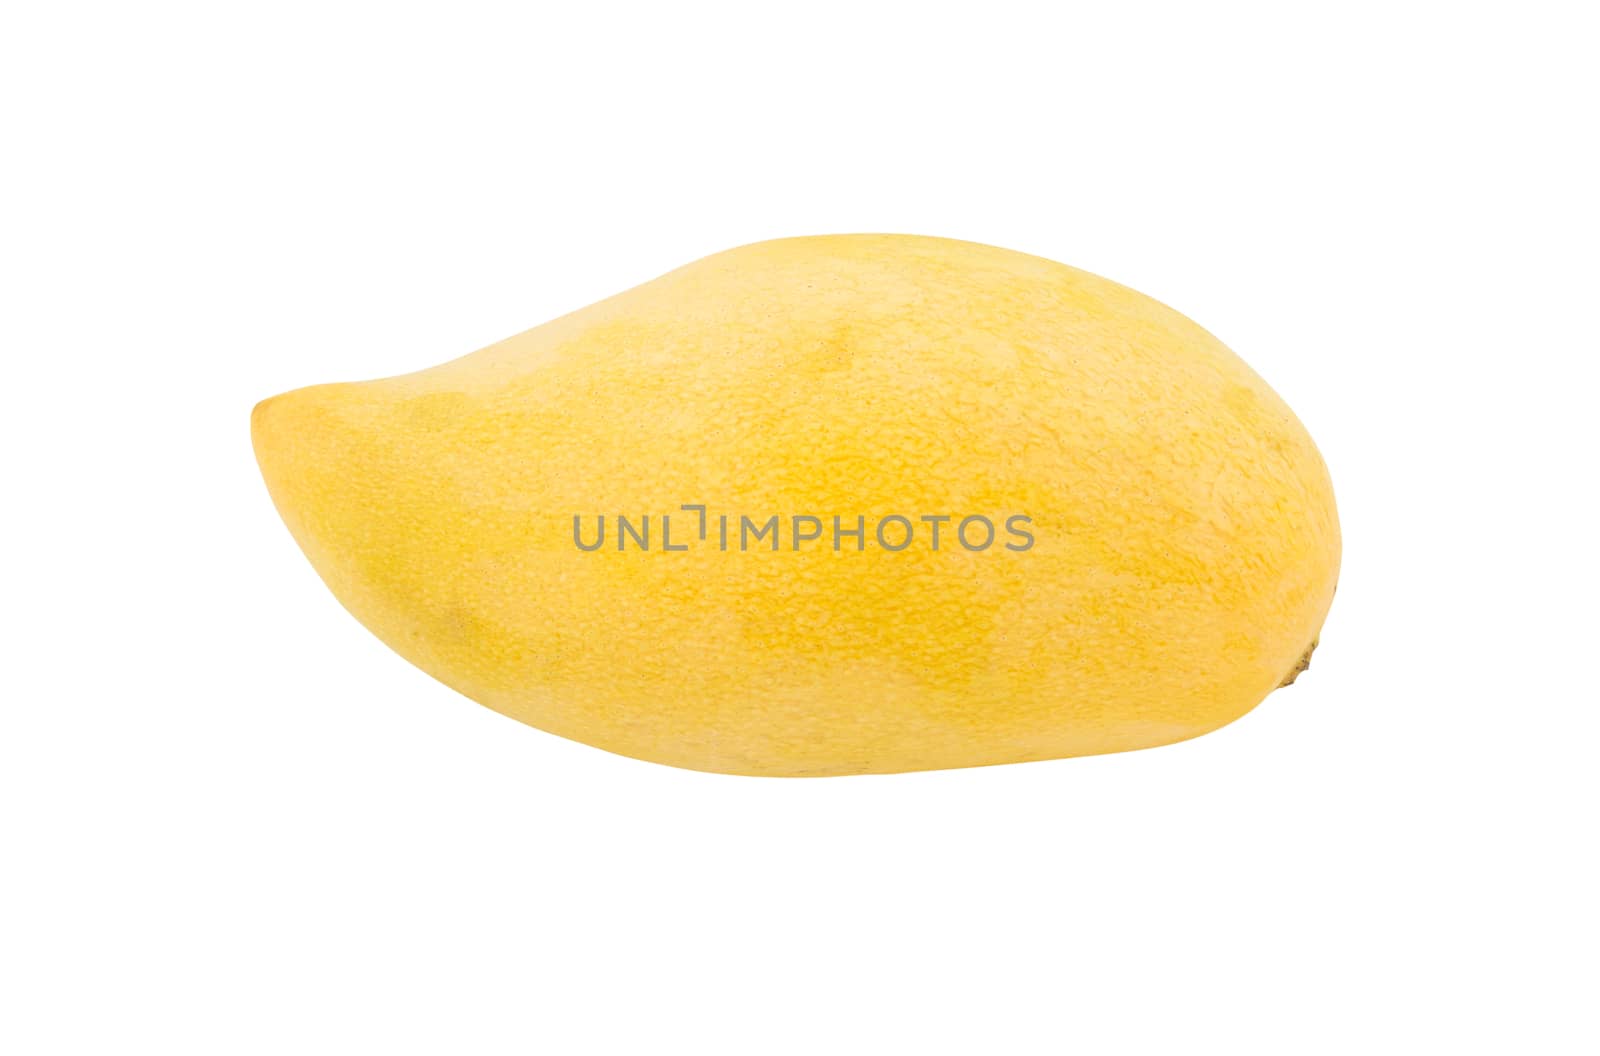 Yellow mango on isolated white background